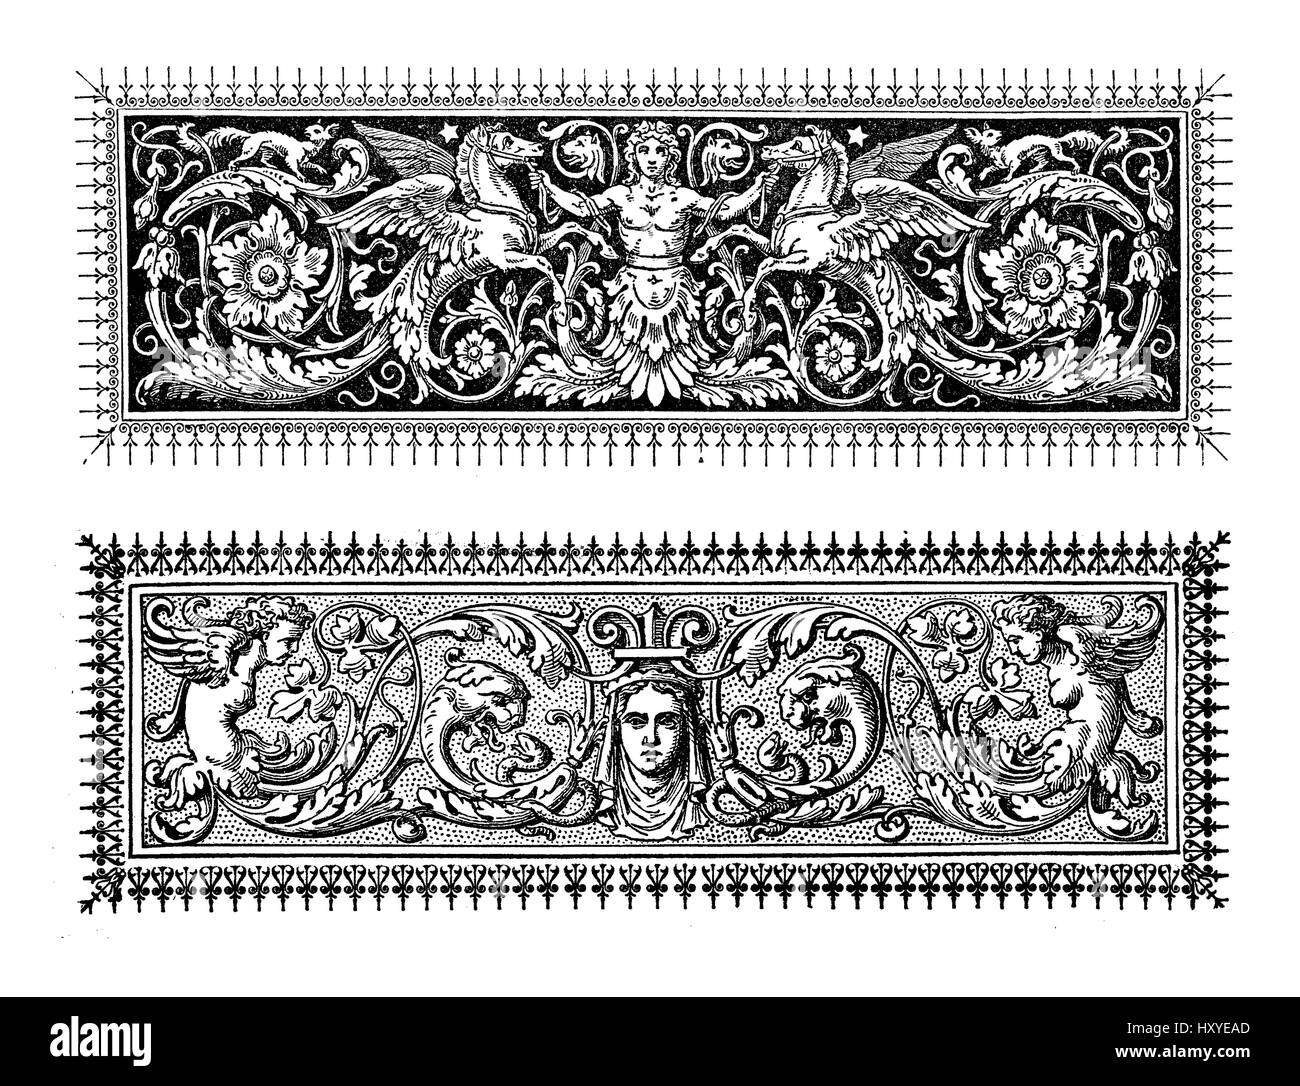 Due riccamente decorato in stile barocco frontiere tipografiche con figure mitologiche e motivi floreali Foto Stock